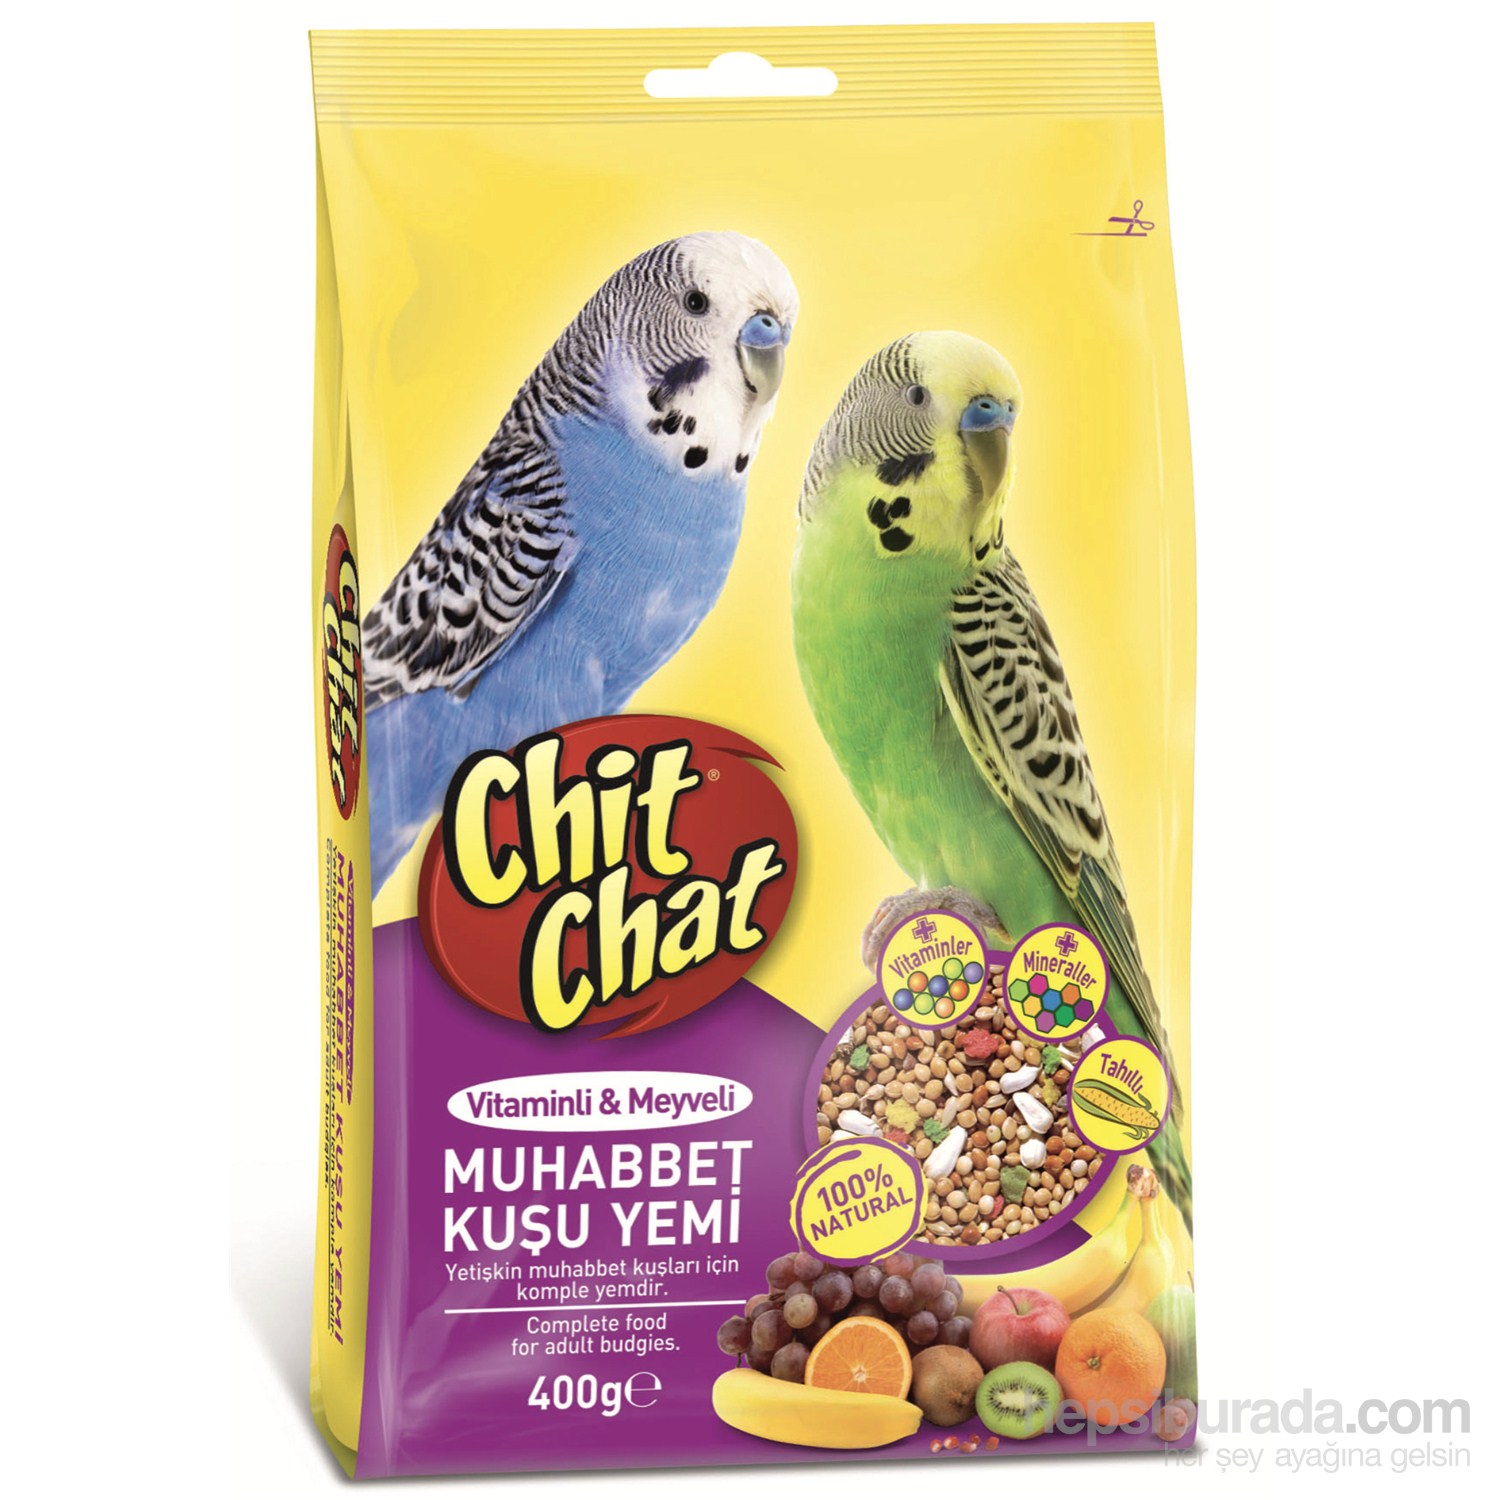 Chit Chat Muhabbet Kuşu Yemi Vitamin Meyveli 400 Gr